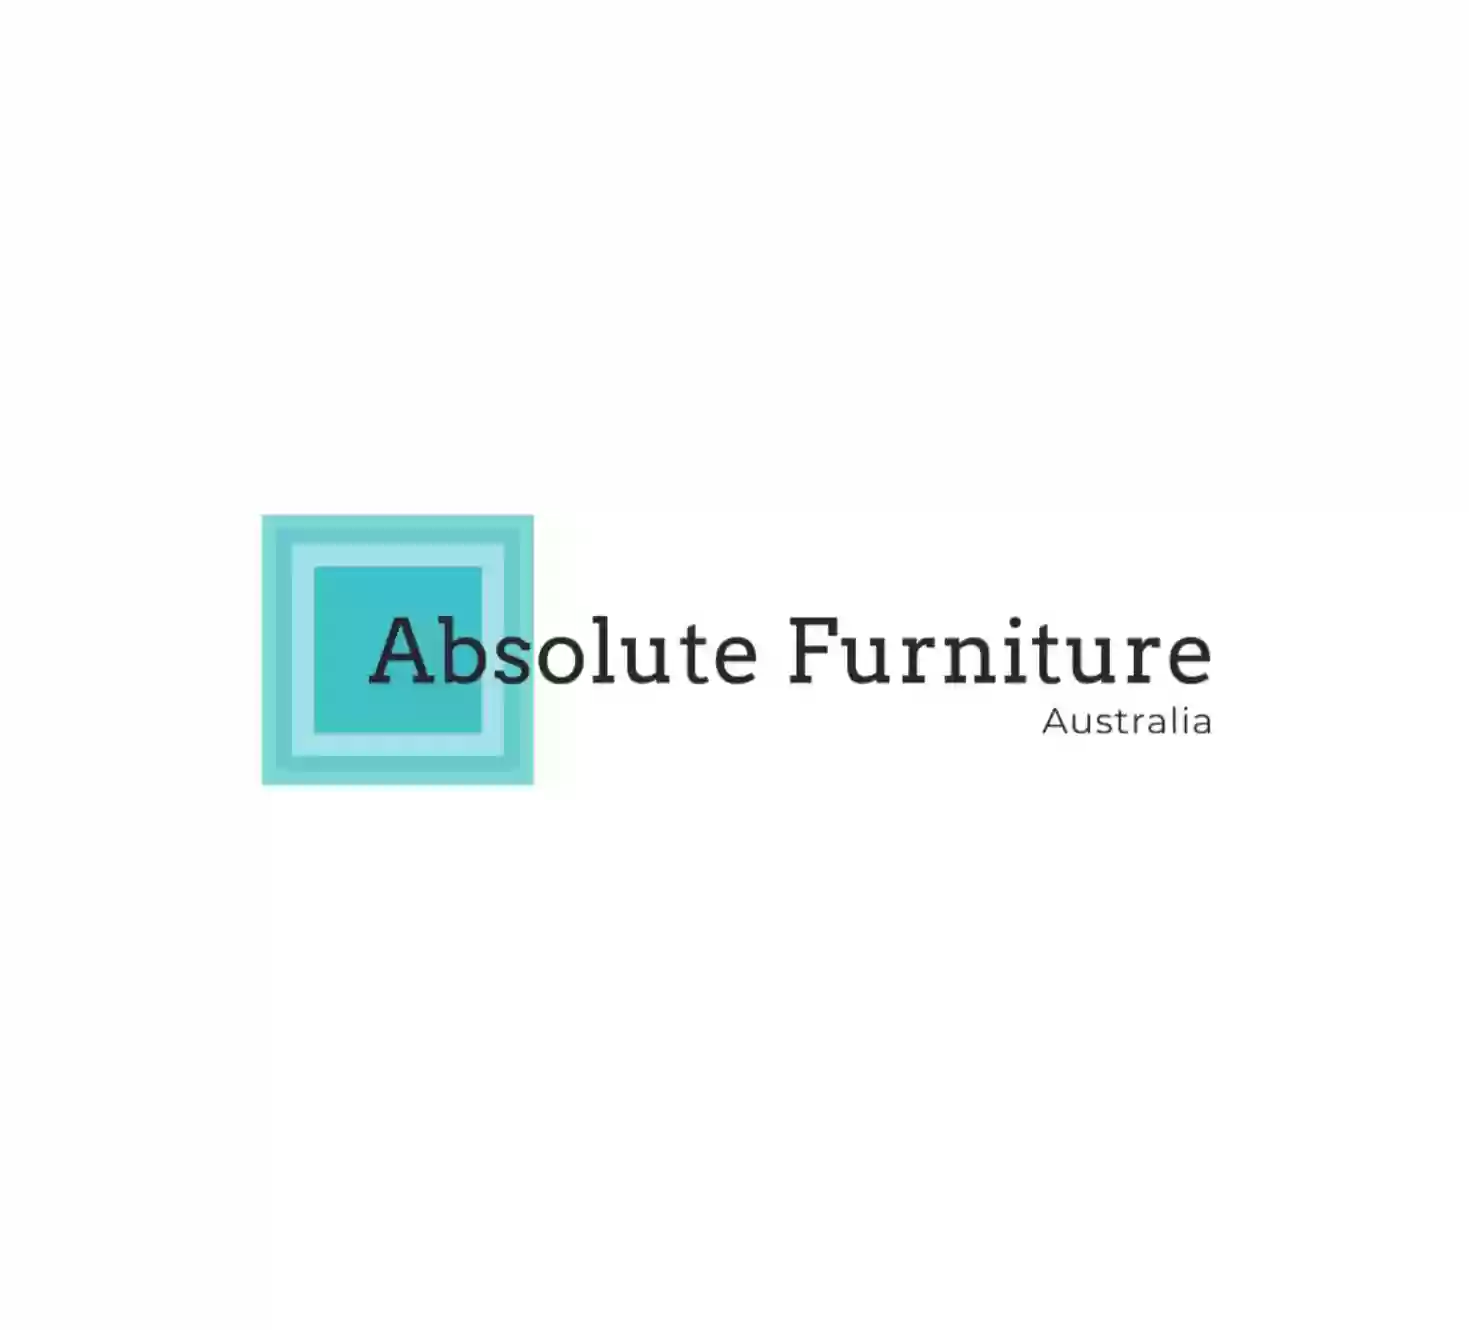 Absolute Furniture